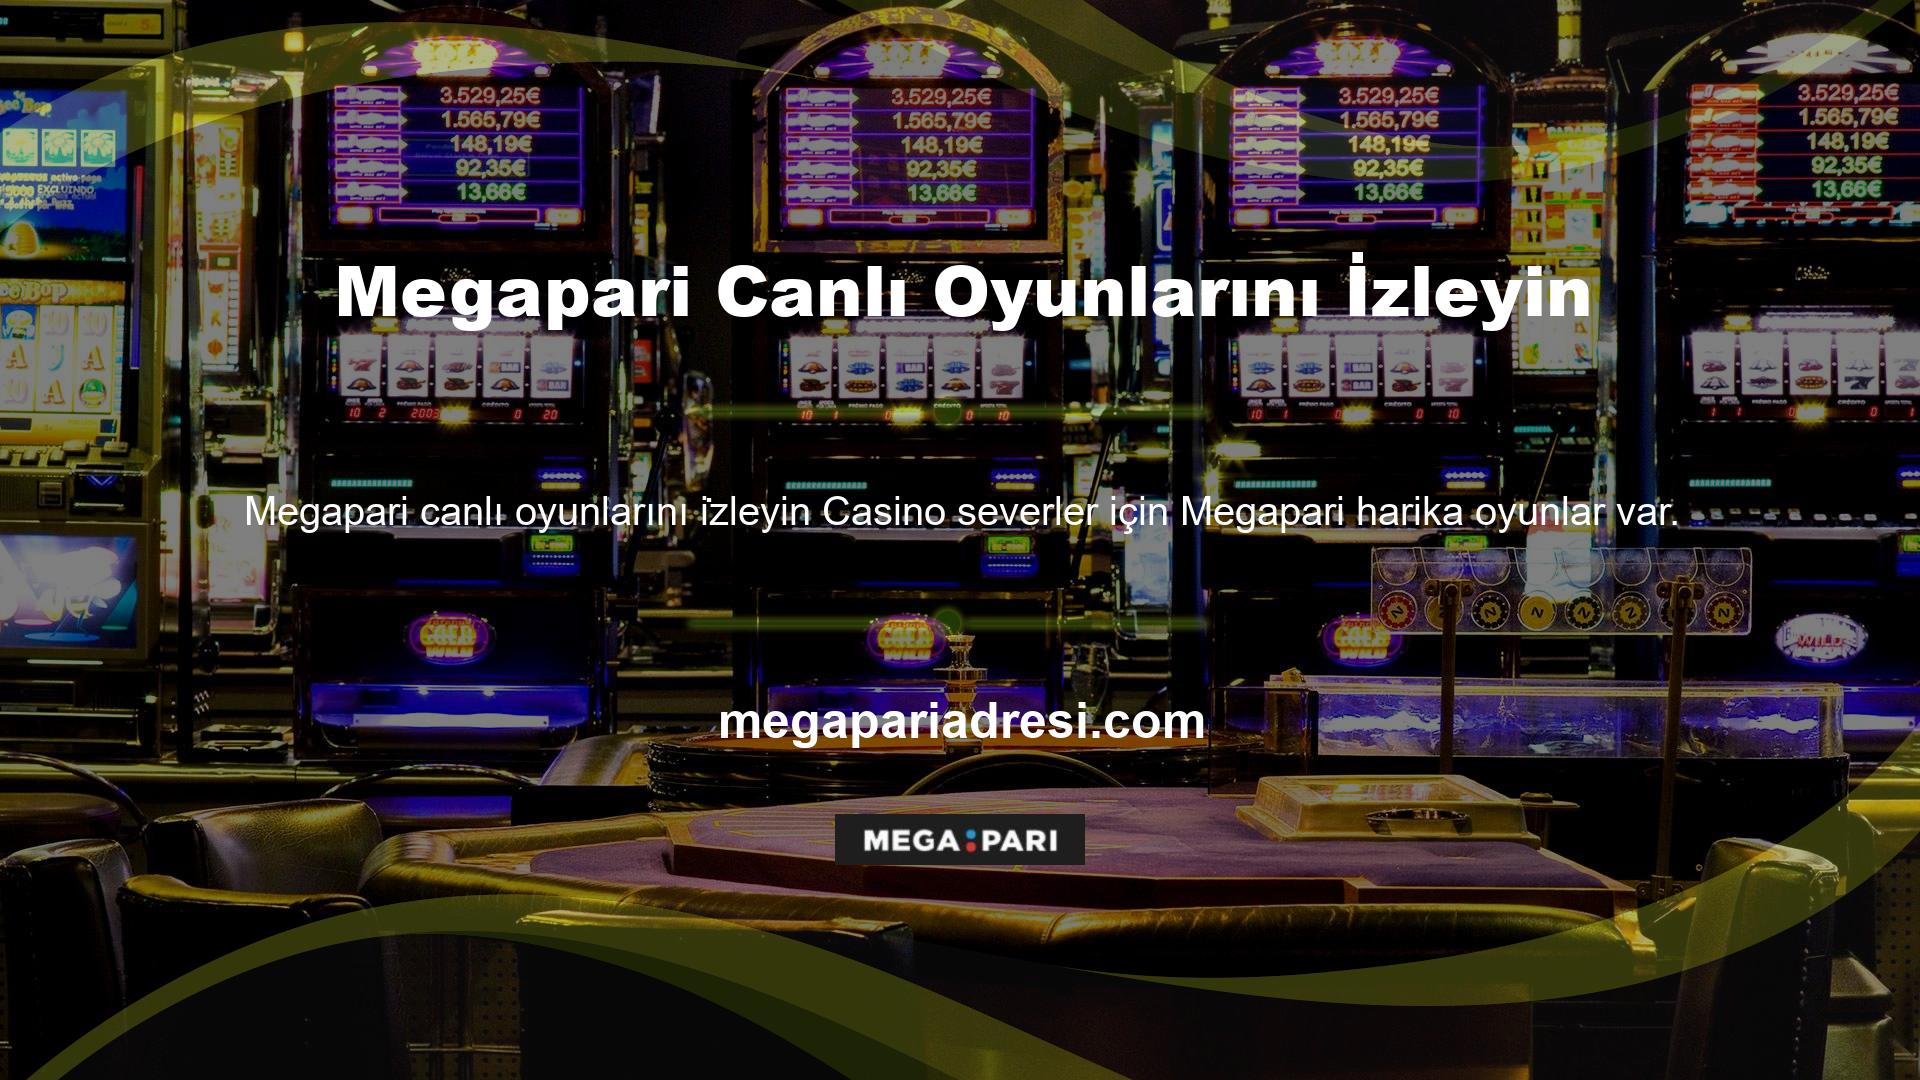 Megapari Casino bölümü, slot ve diğer otomatik oyunları oynamanıza izin verir